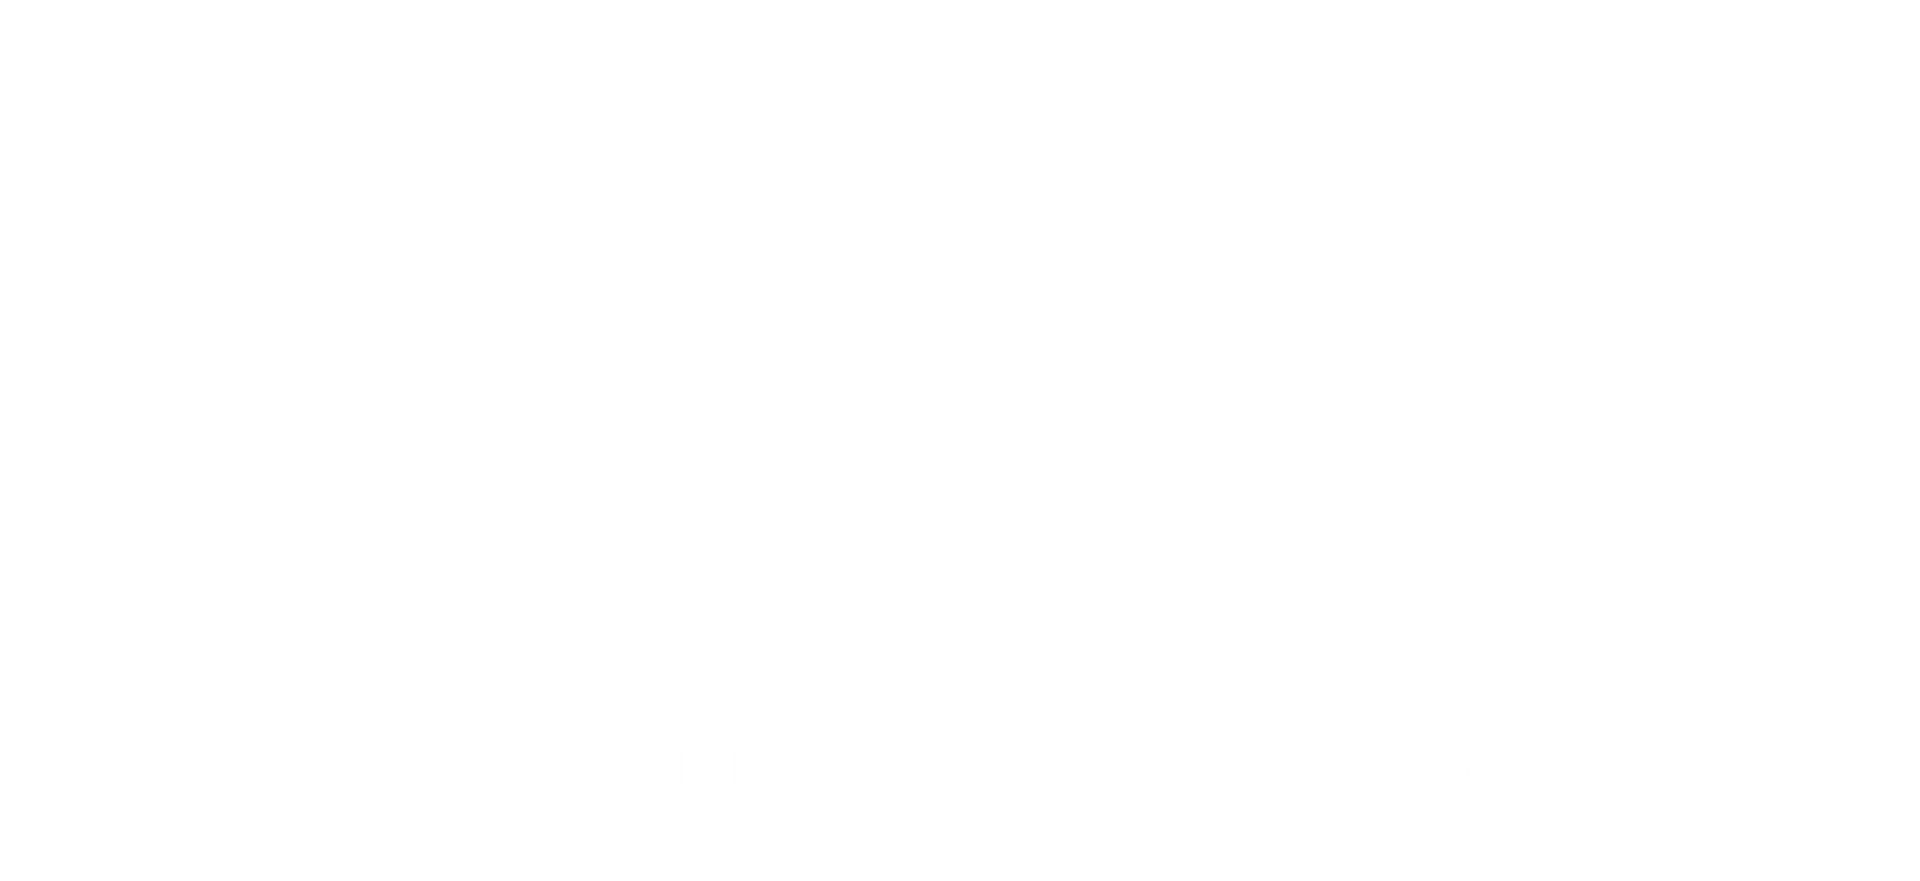 Harlem Cigar logo